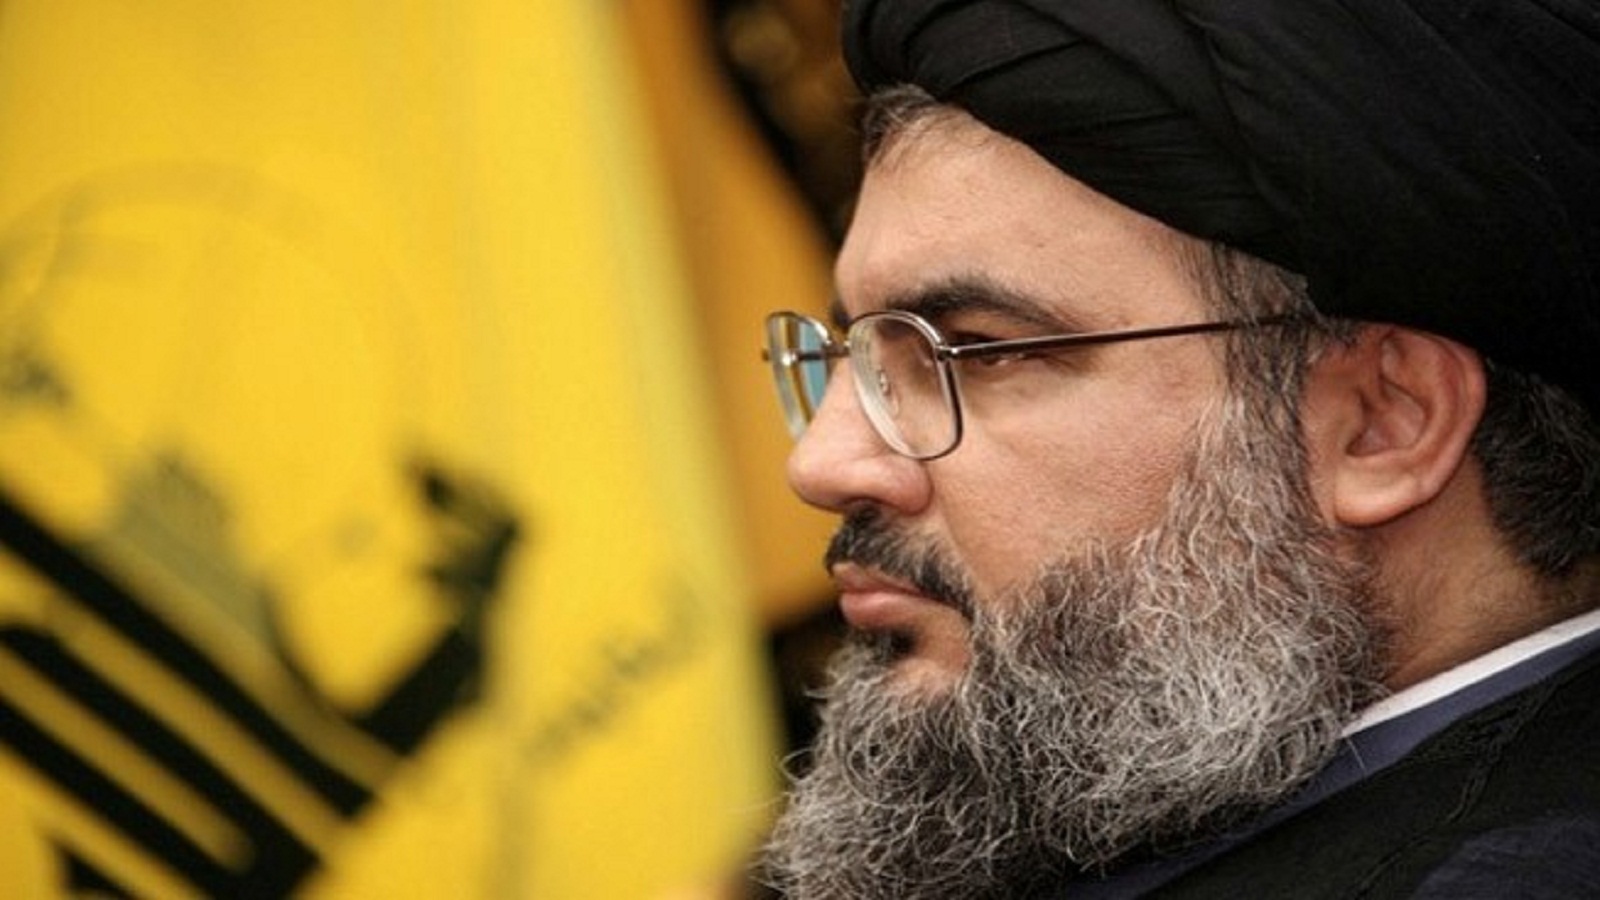 تجميد العقوبات على المقربين من "حزب الله"